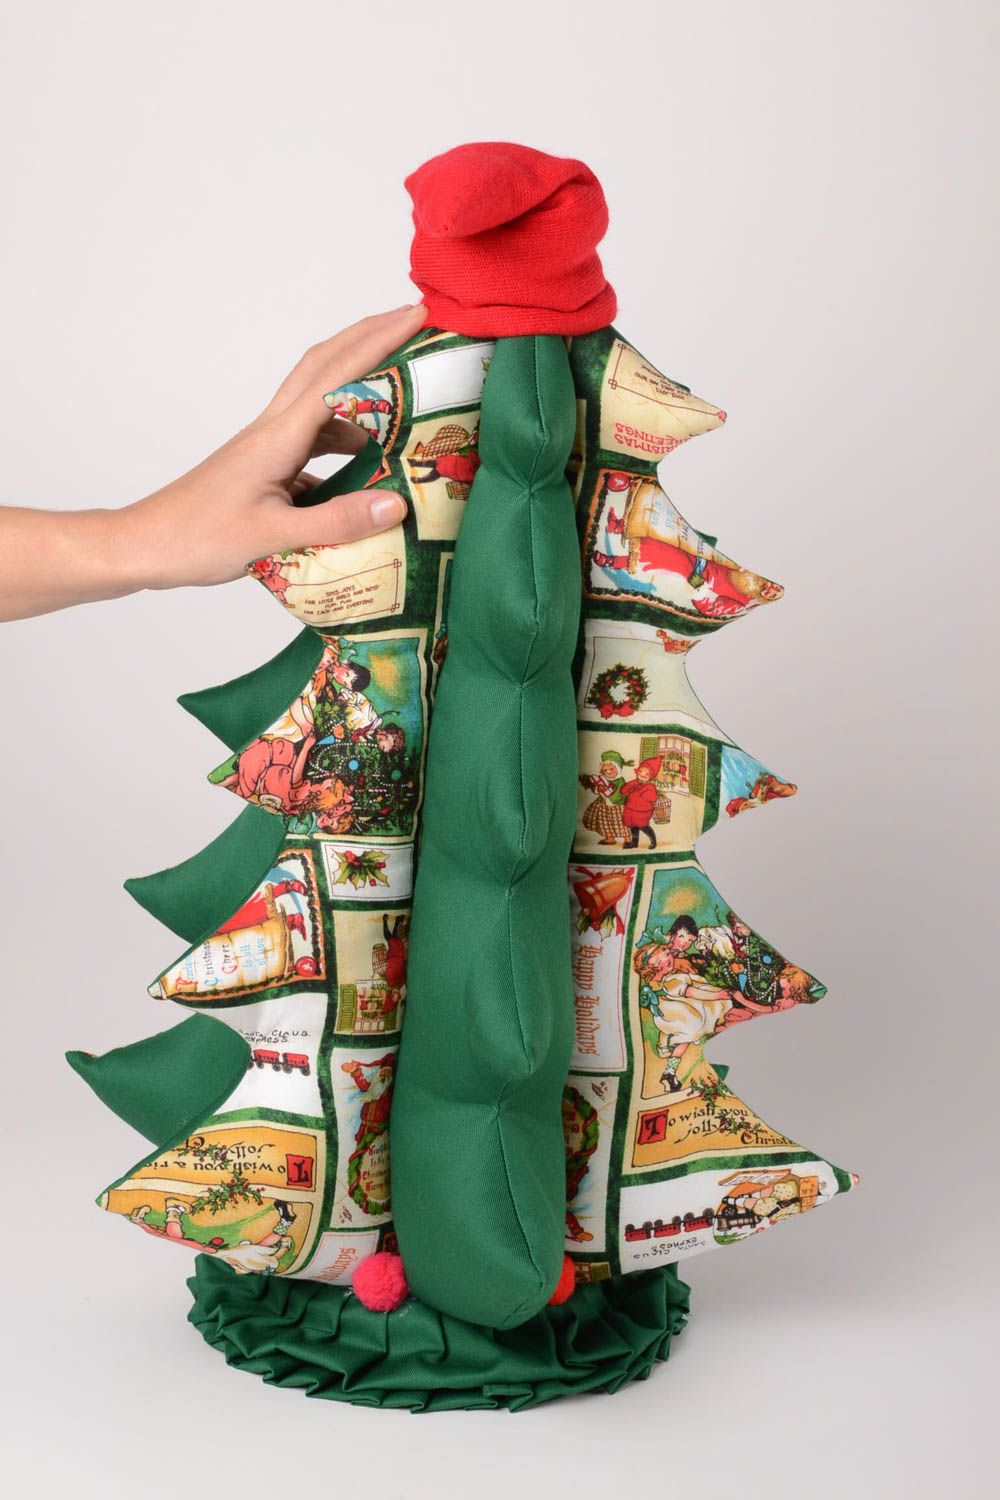 Muñeco de tela juguete artesanal peluche original árbol de Navidad blando foto 2